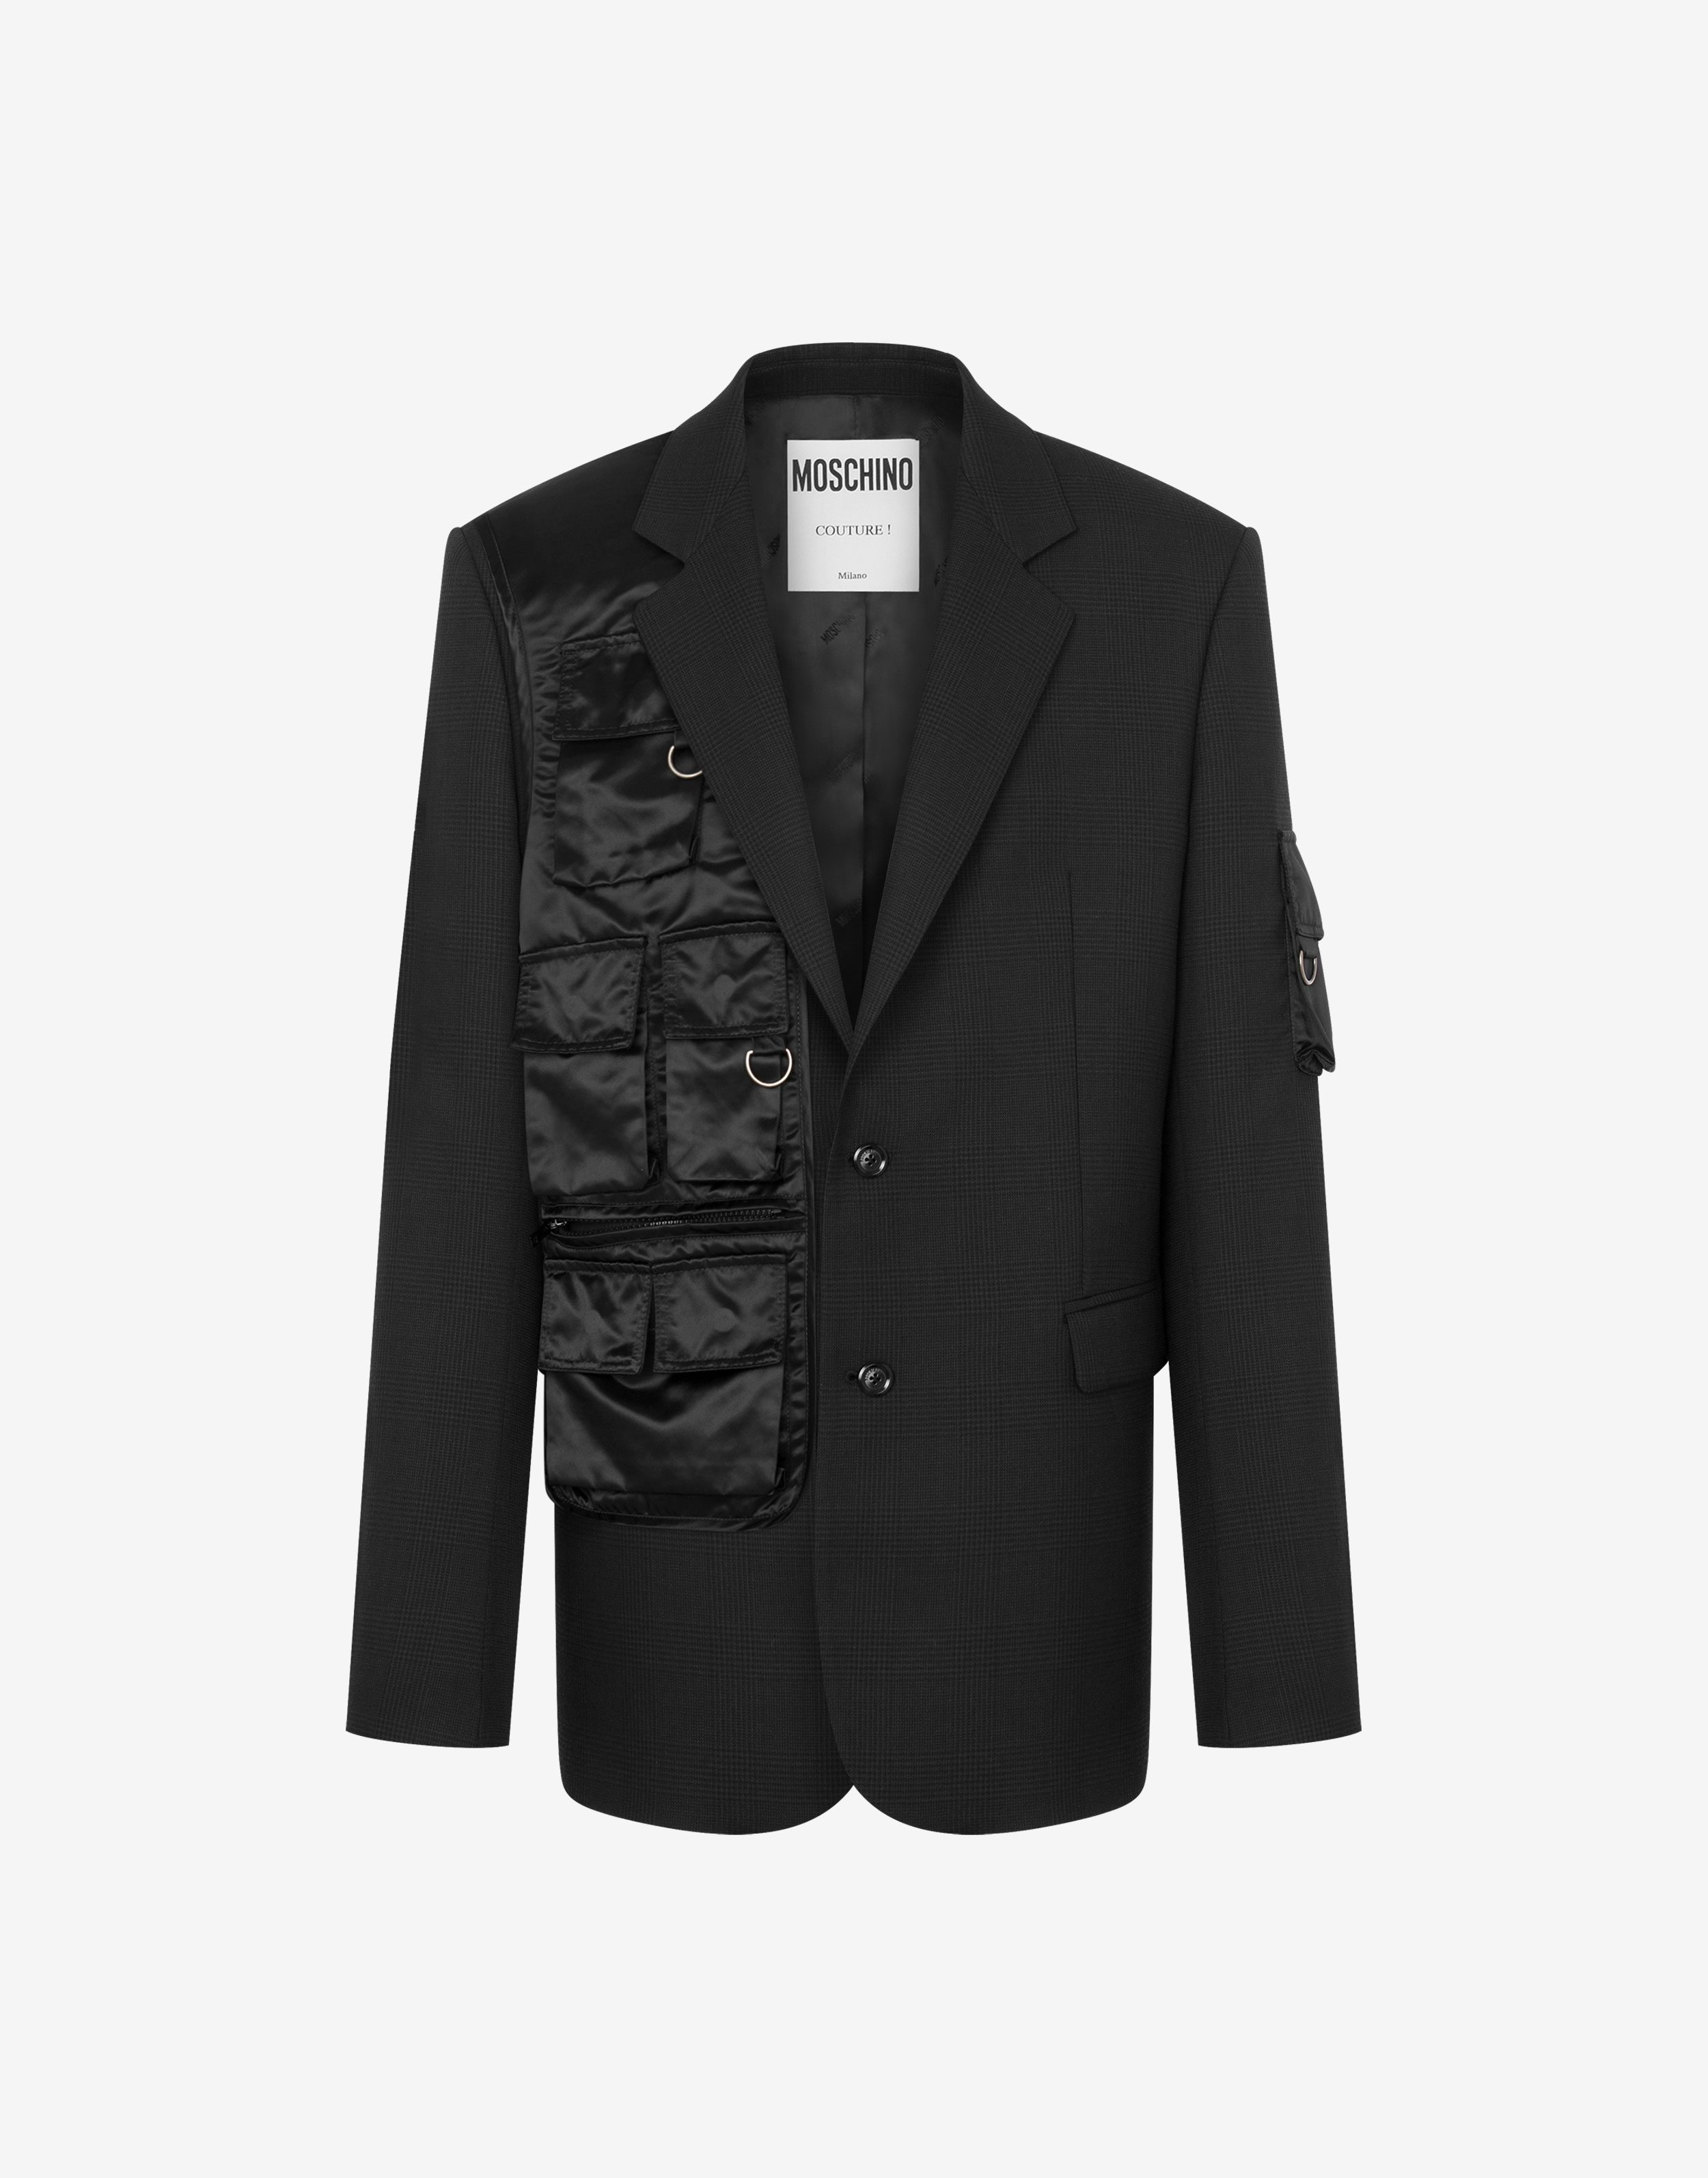 Jacke aus wolle im glencheck-stil multipocket details